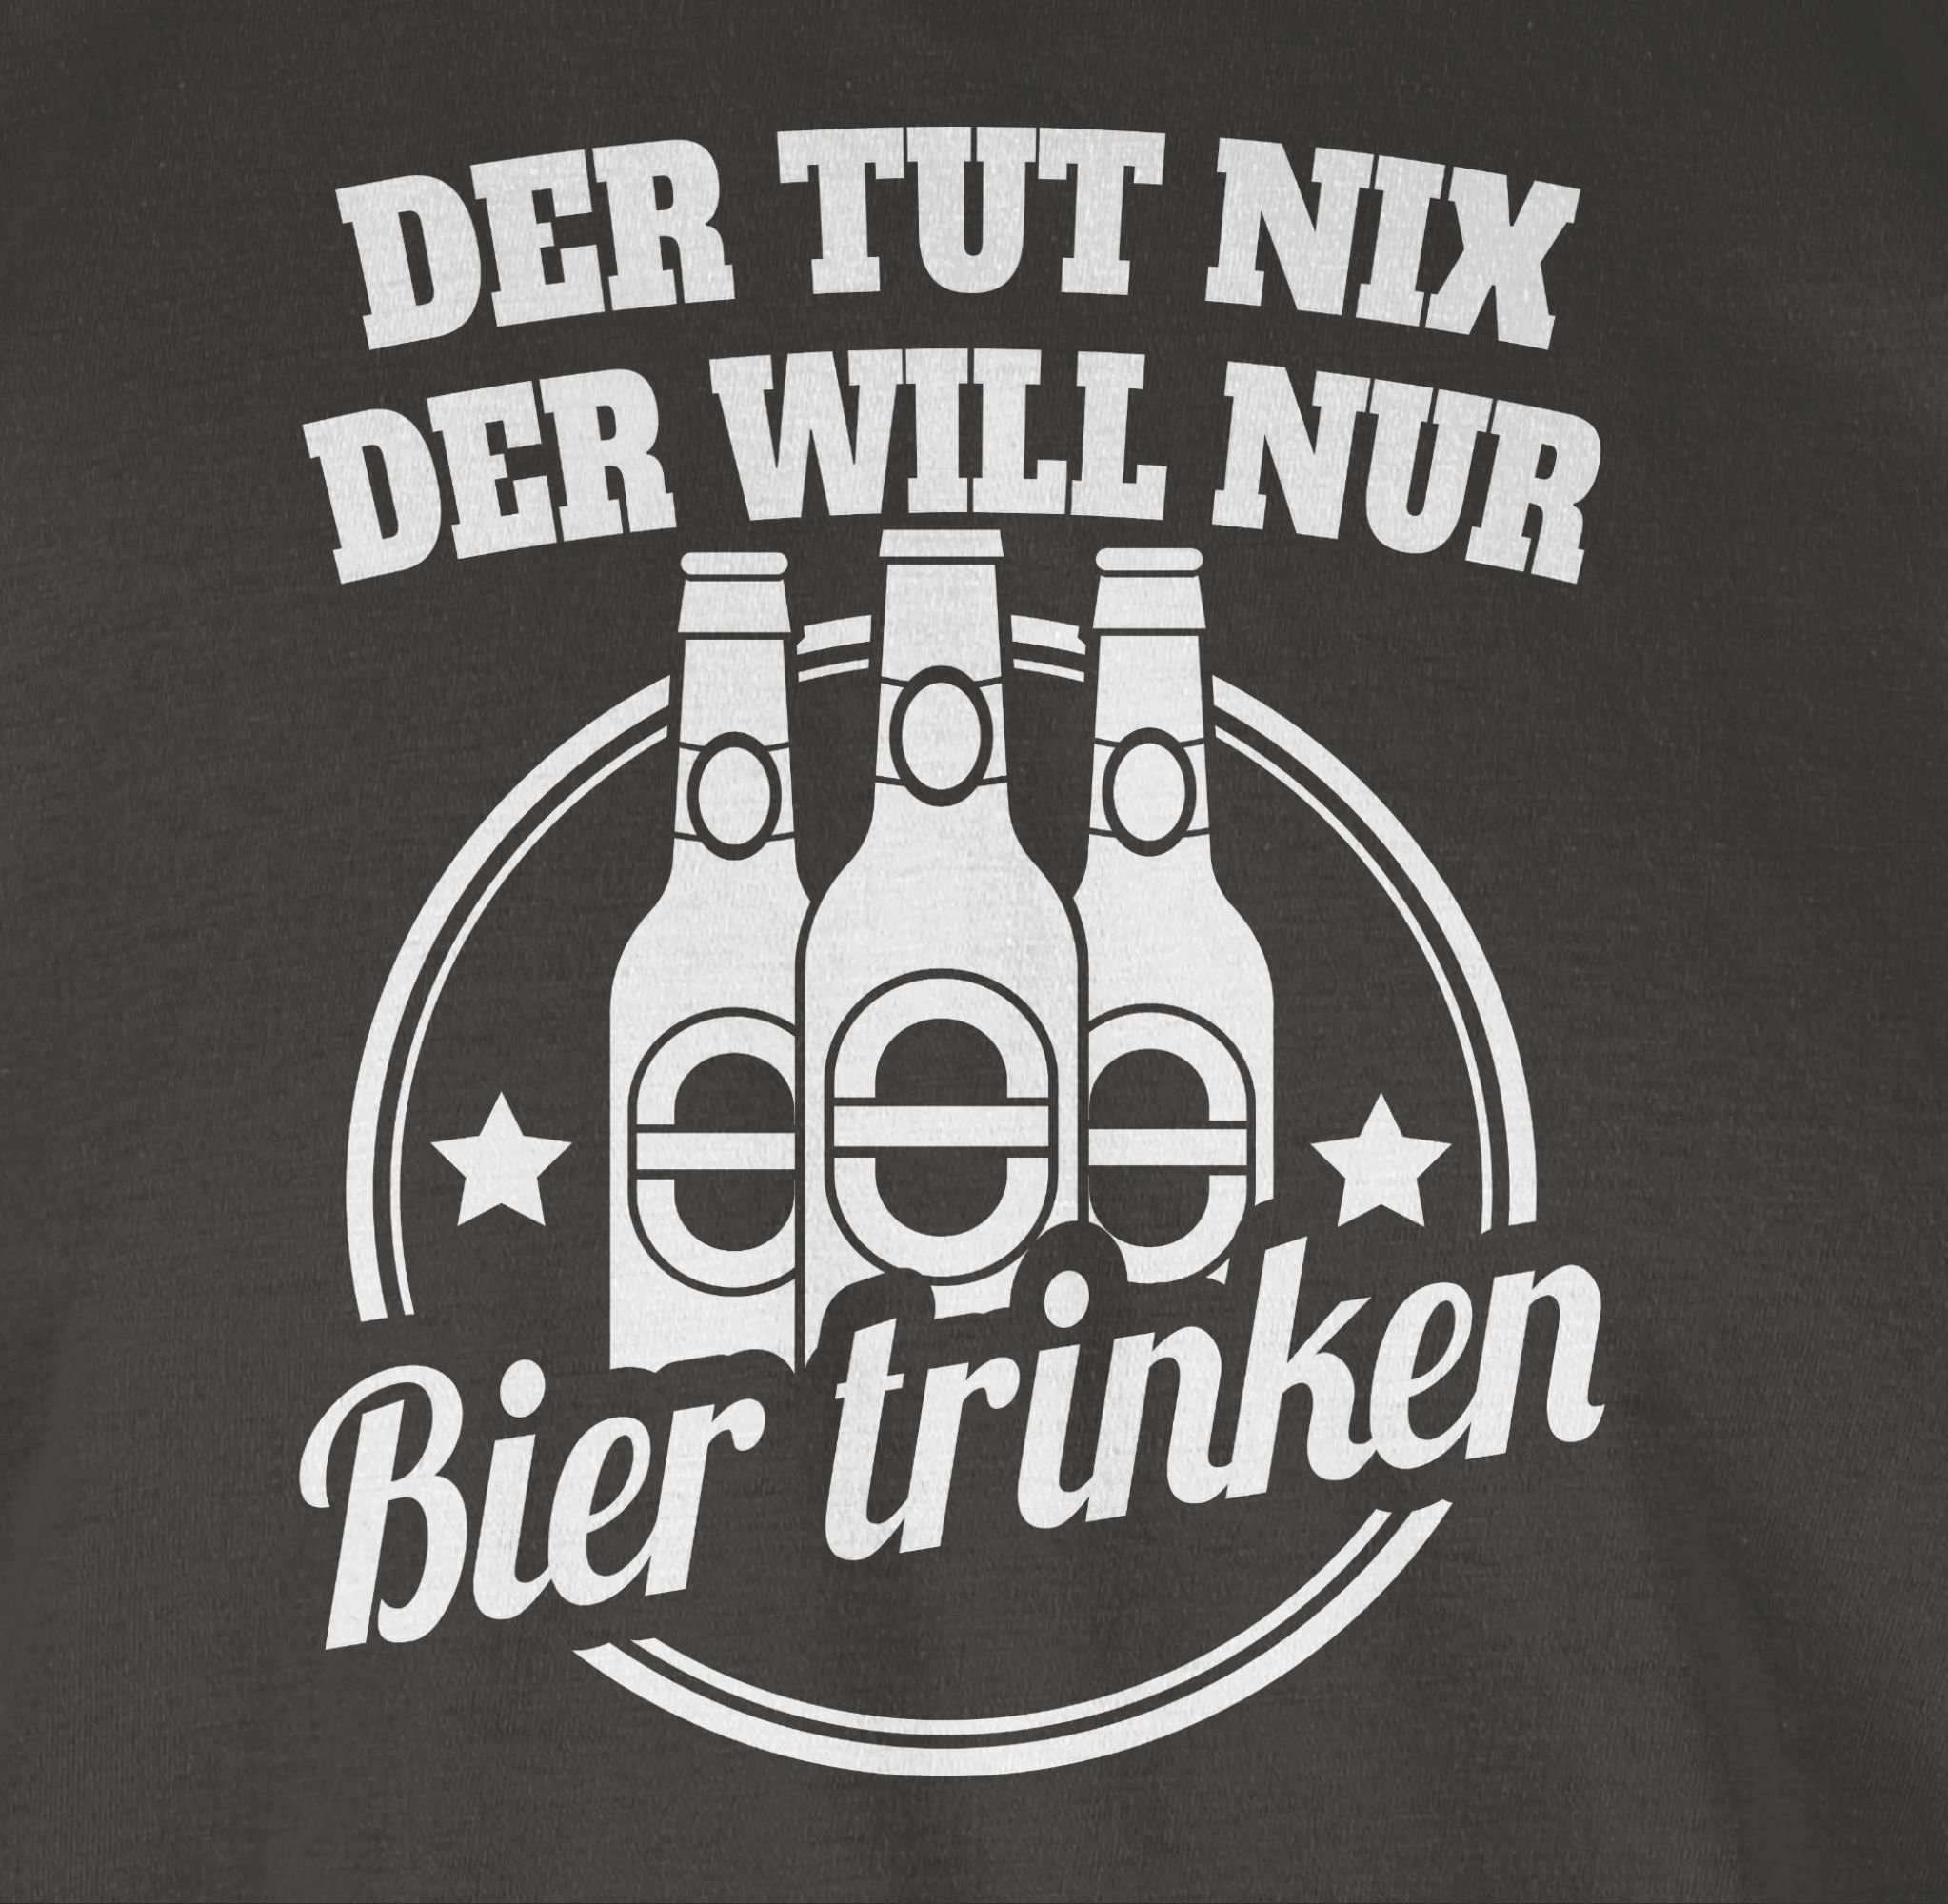 Shirtracer T-Shirt Der tut will nix 2 Sprüche nur der Bier Statement trinken Dunkelgrau Spruch mit